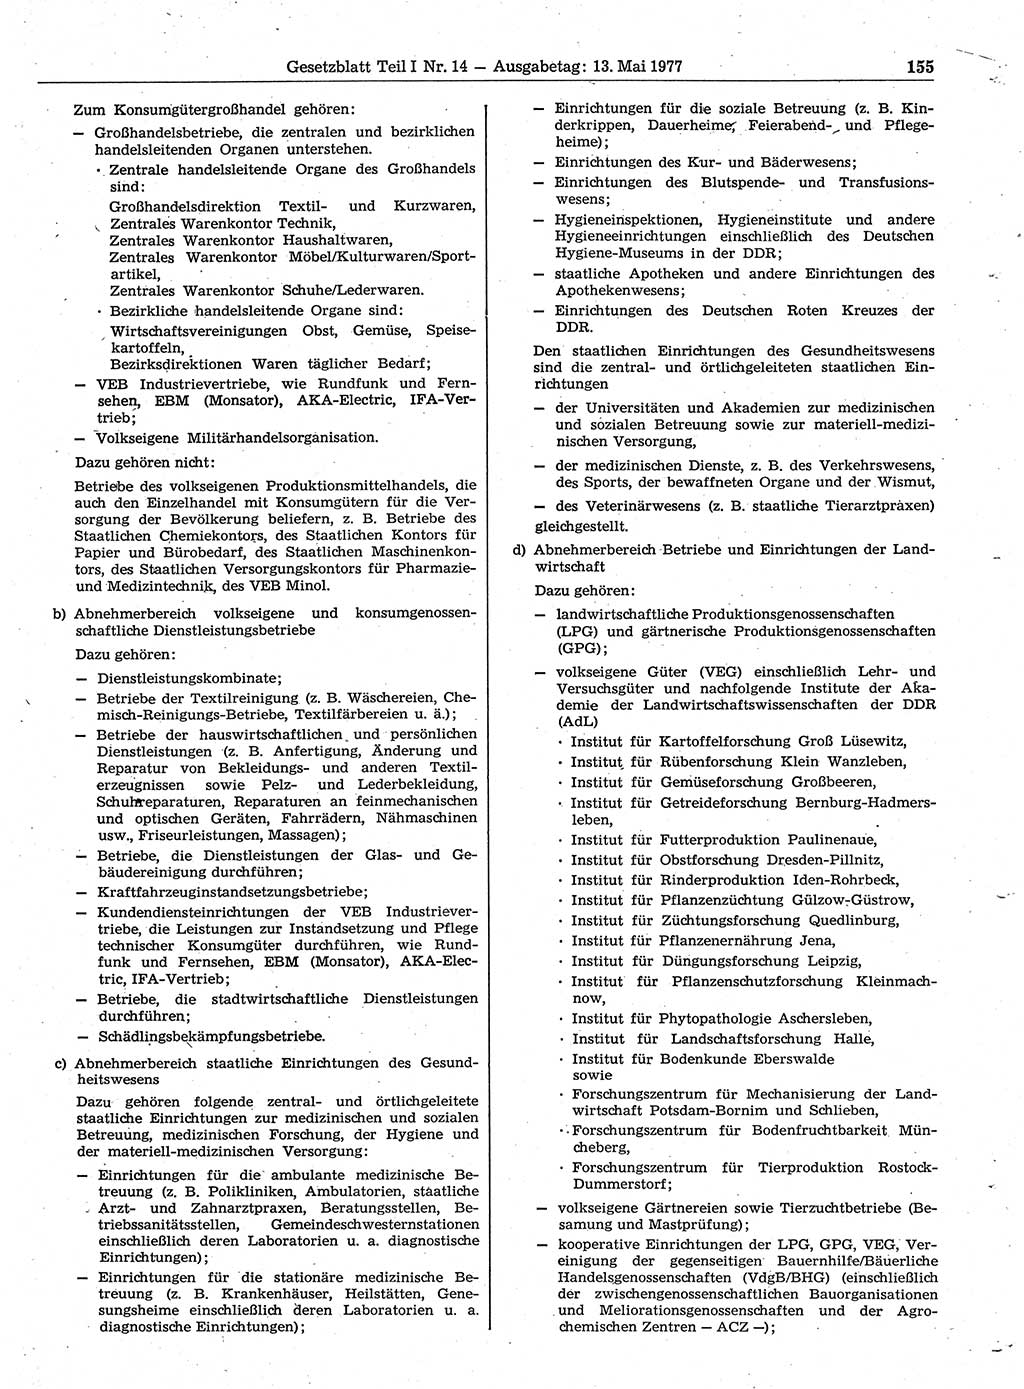 Gesetzblatt (GBl.) der Deutschen Demokratischen Republik (DDR) Teil Ⅰ 1977, Seite 155 (GBl. DDR Ⅰ 1977, S. 155)